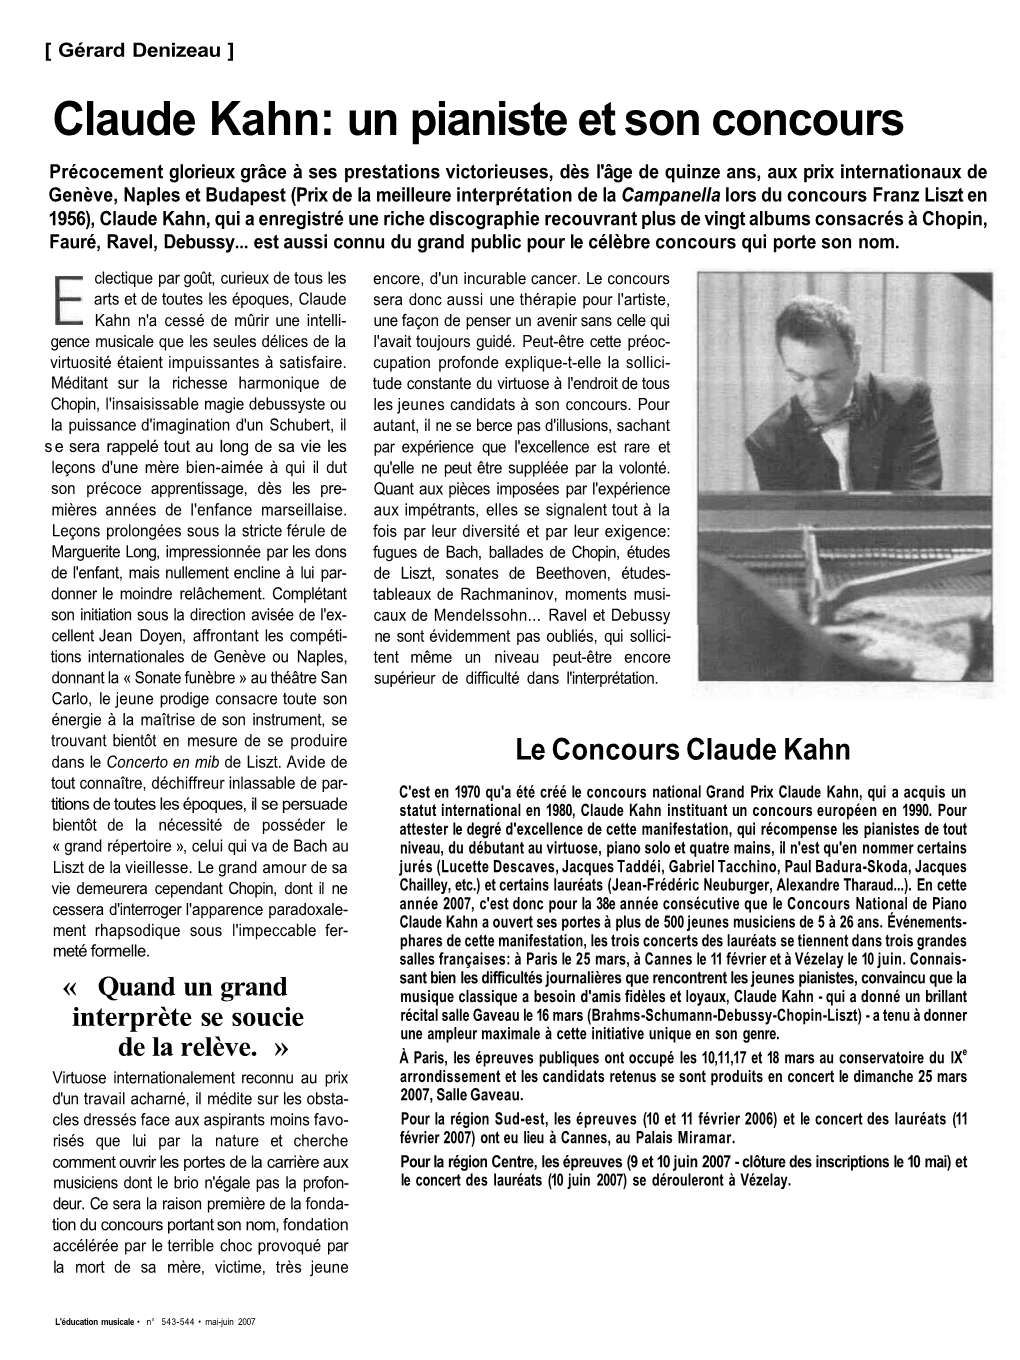 Claude Kahn: Un Pianiste Et Son Concours